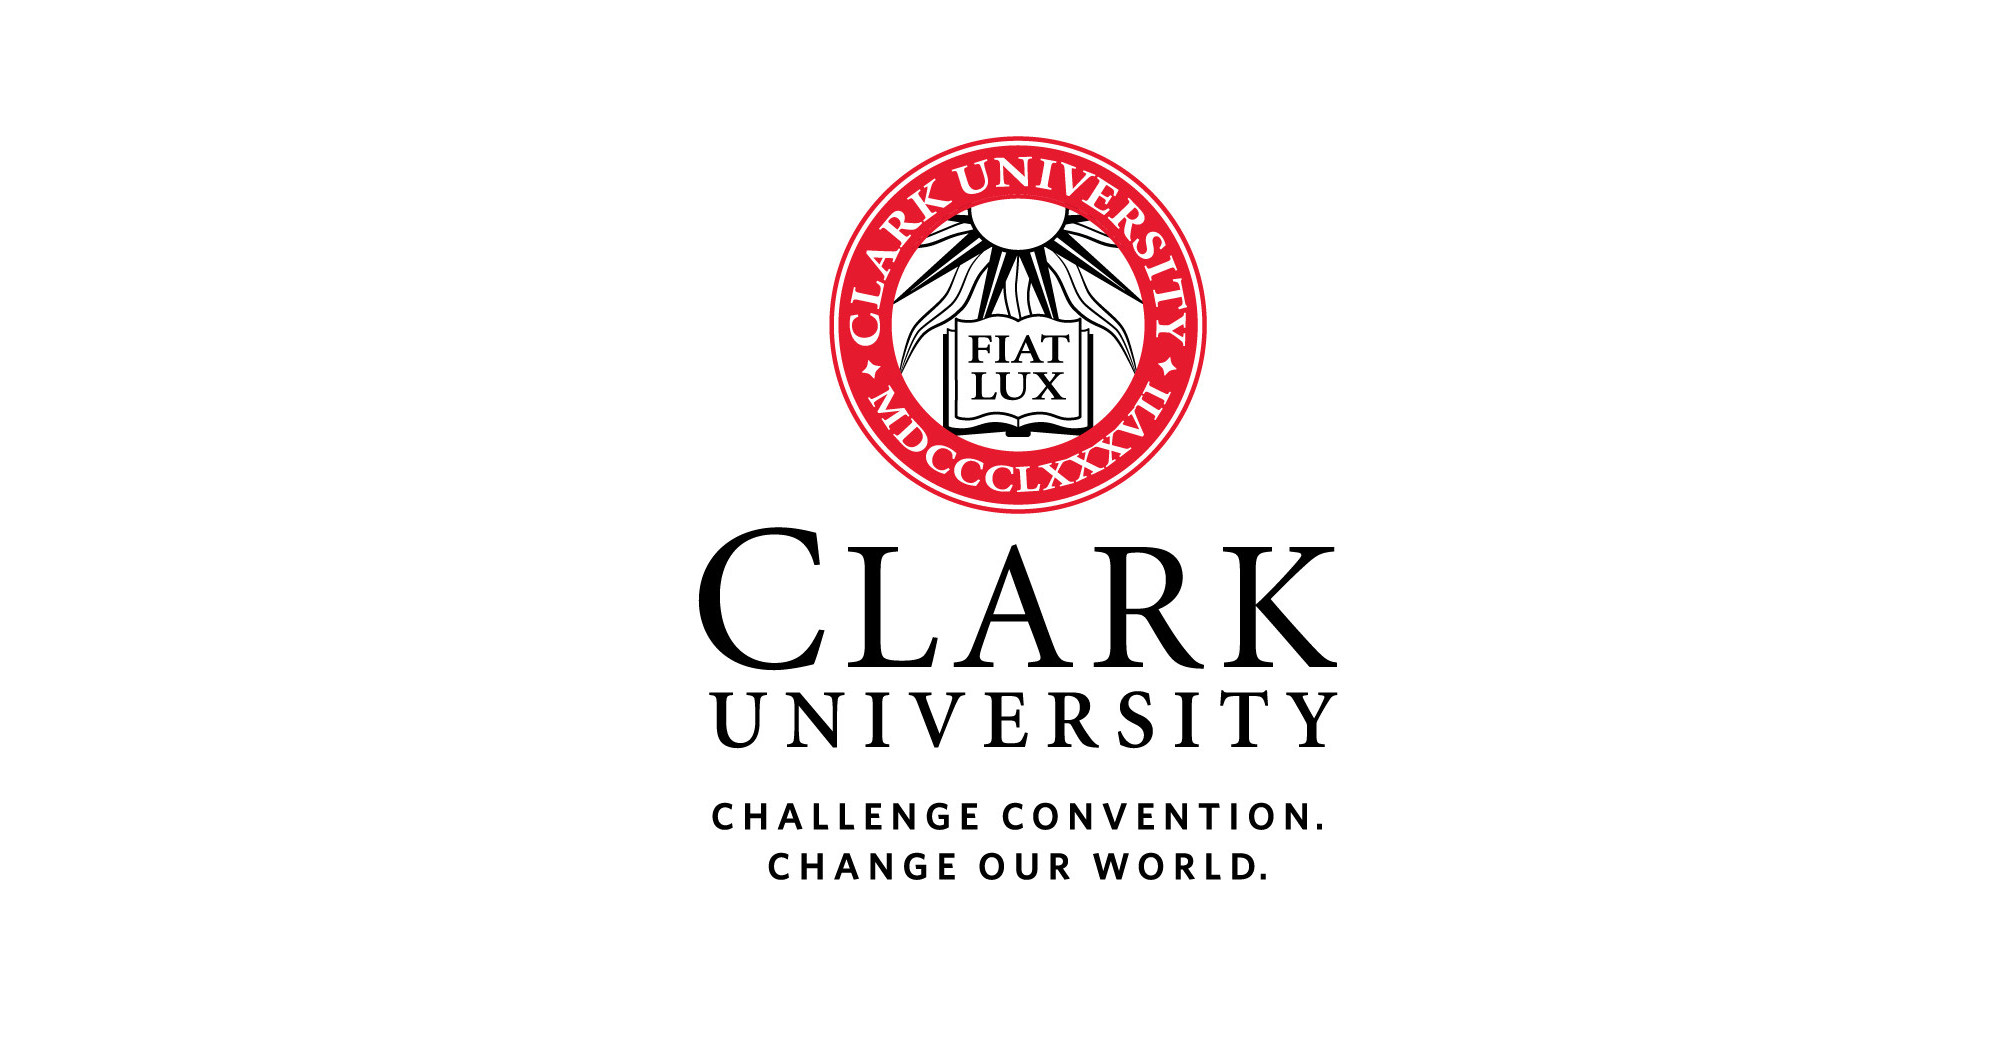 منحة مقدمة من جامعة كلارك للطلبة من جميع أنحاء العالم لدراسة درجة البكالوريوس في الولايات المتحدة الأمريكية